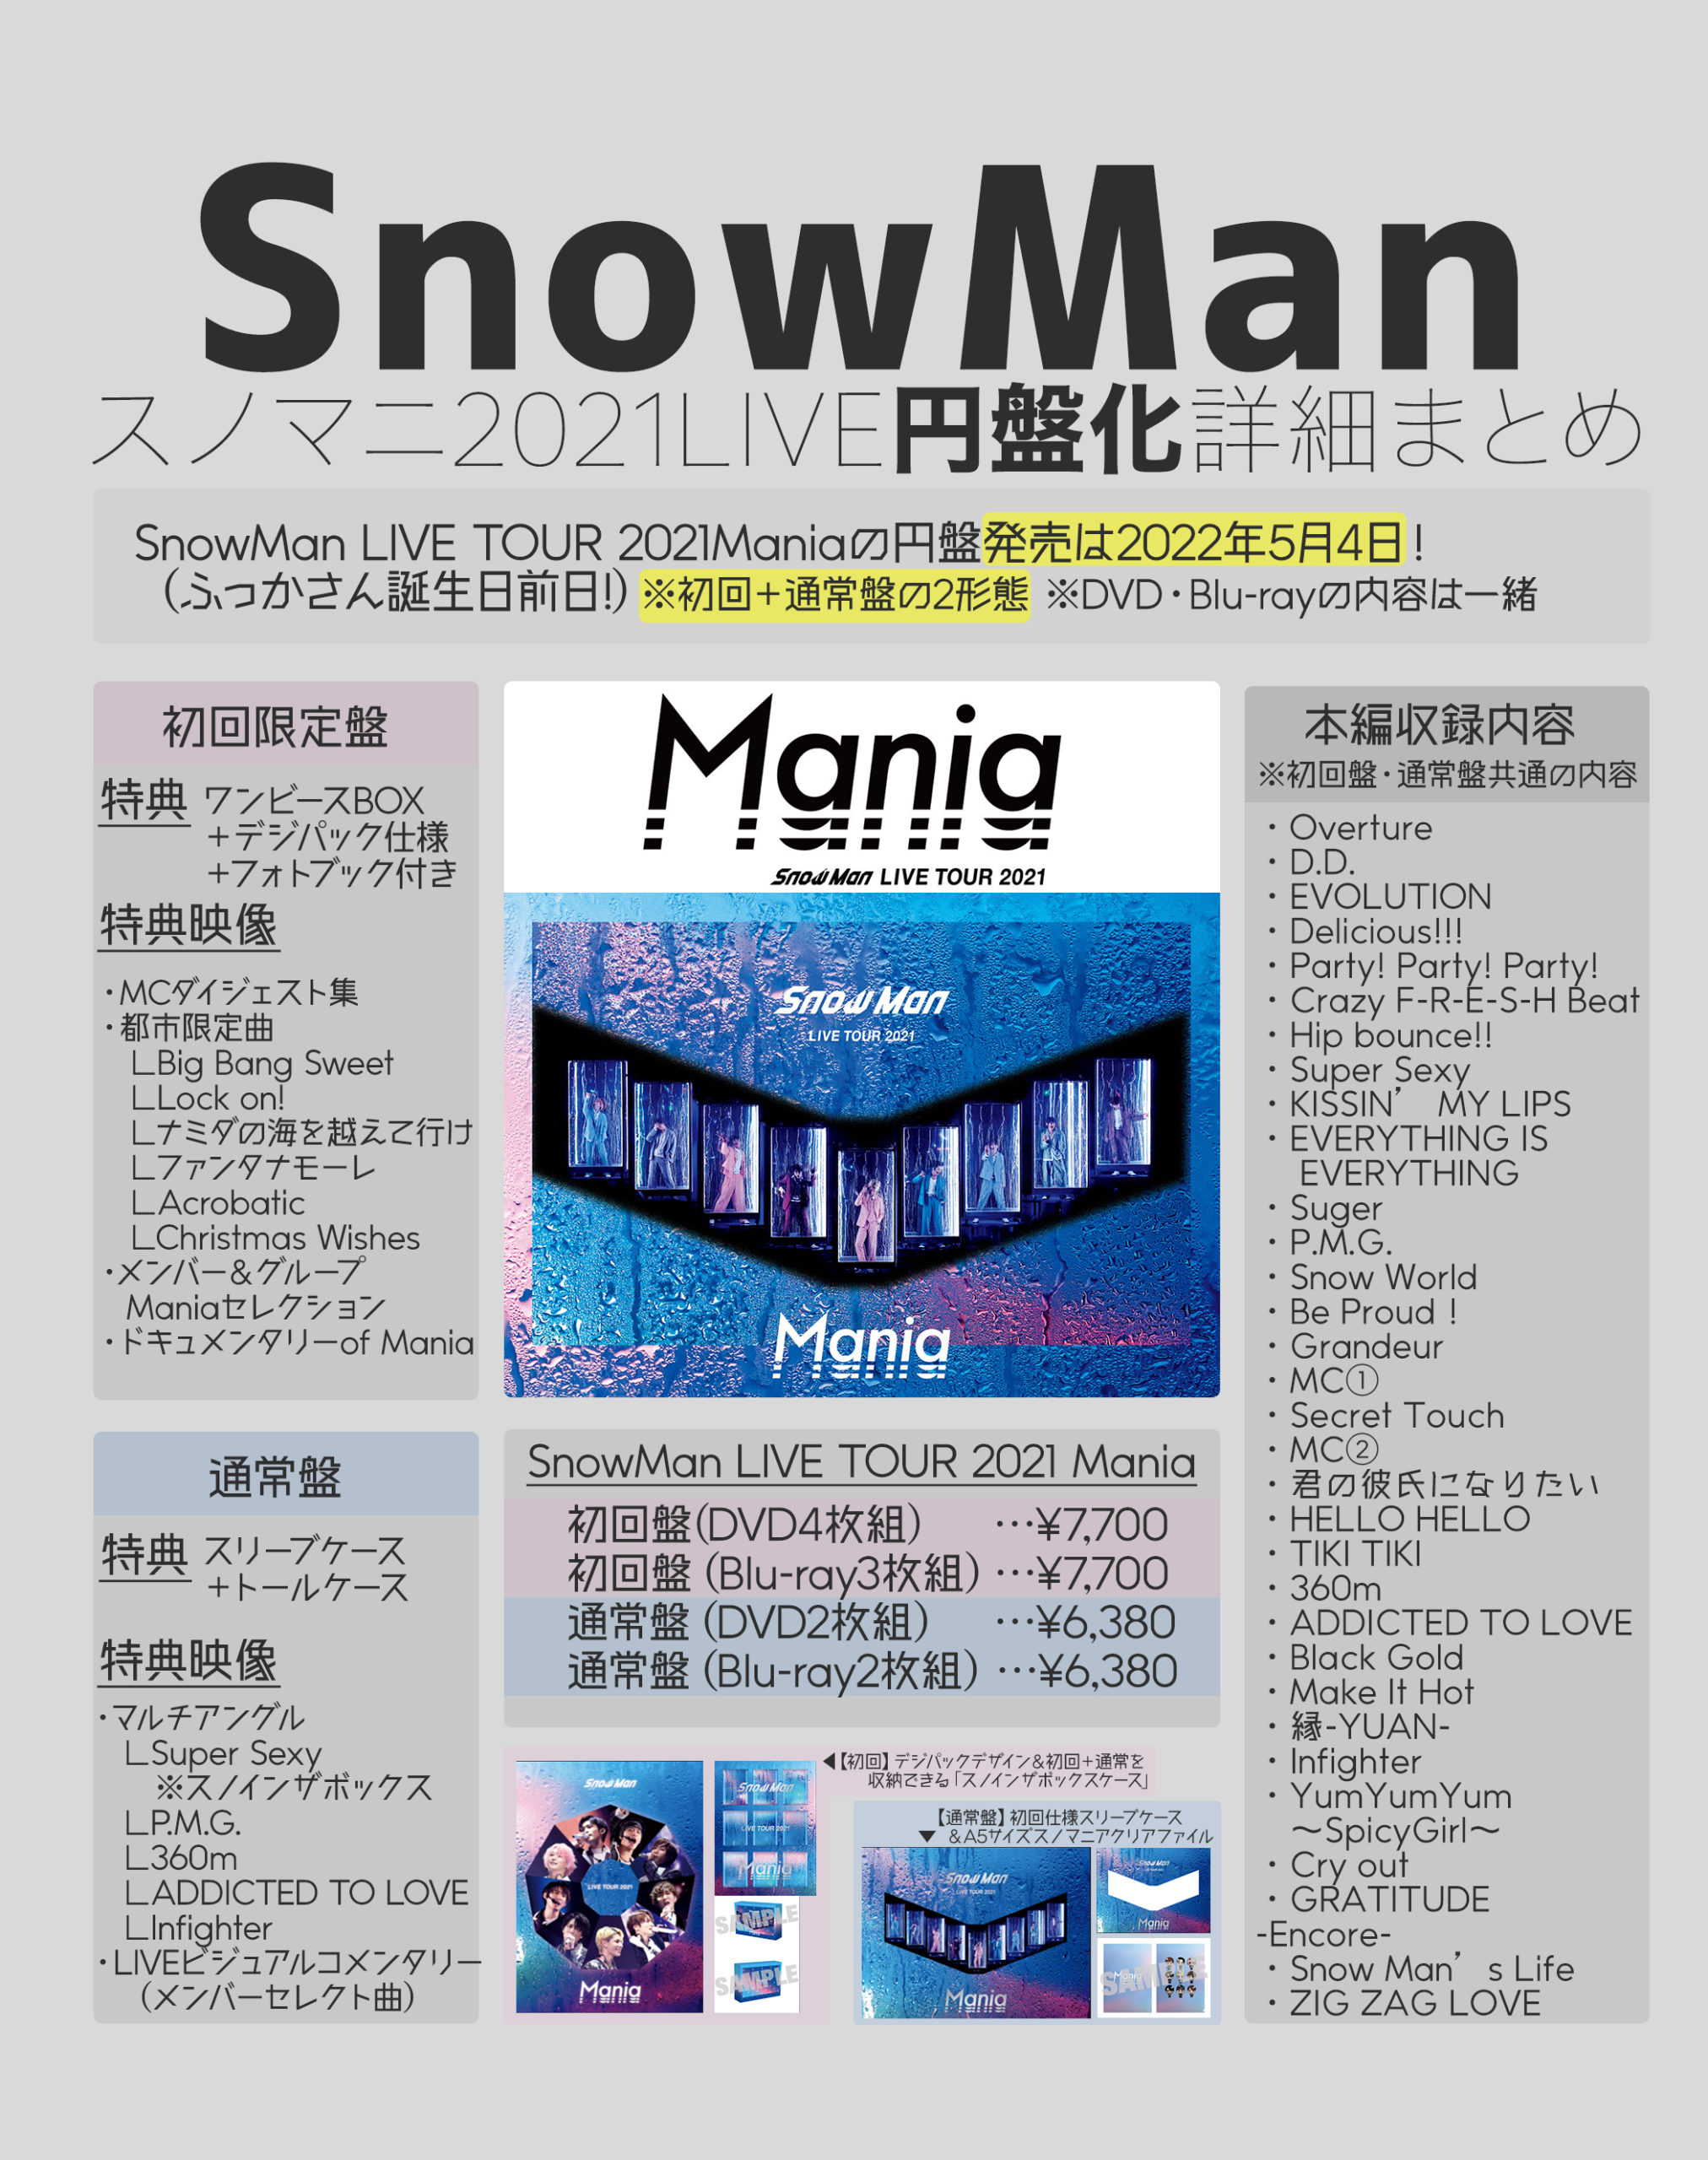 ニッサン・638 スノマニ SnowMan LIVE TOUR 2021 Mania DVD 初回